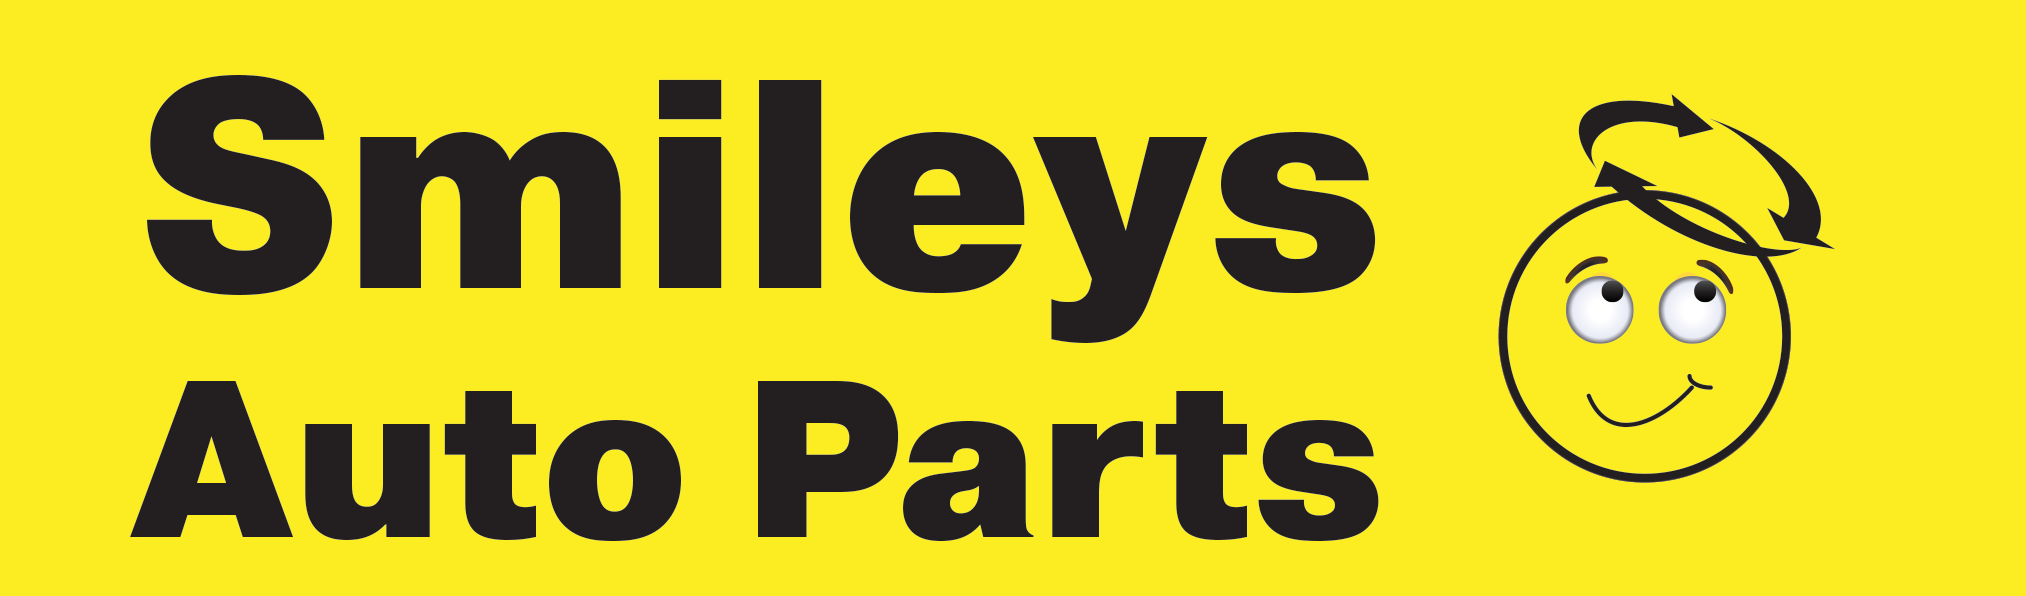 Smileys Auto Parts